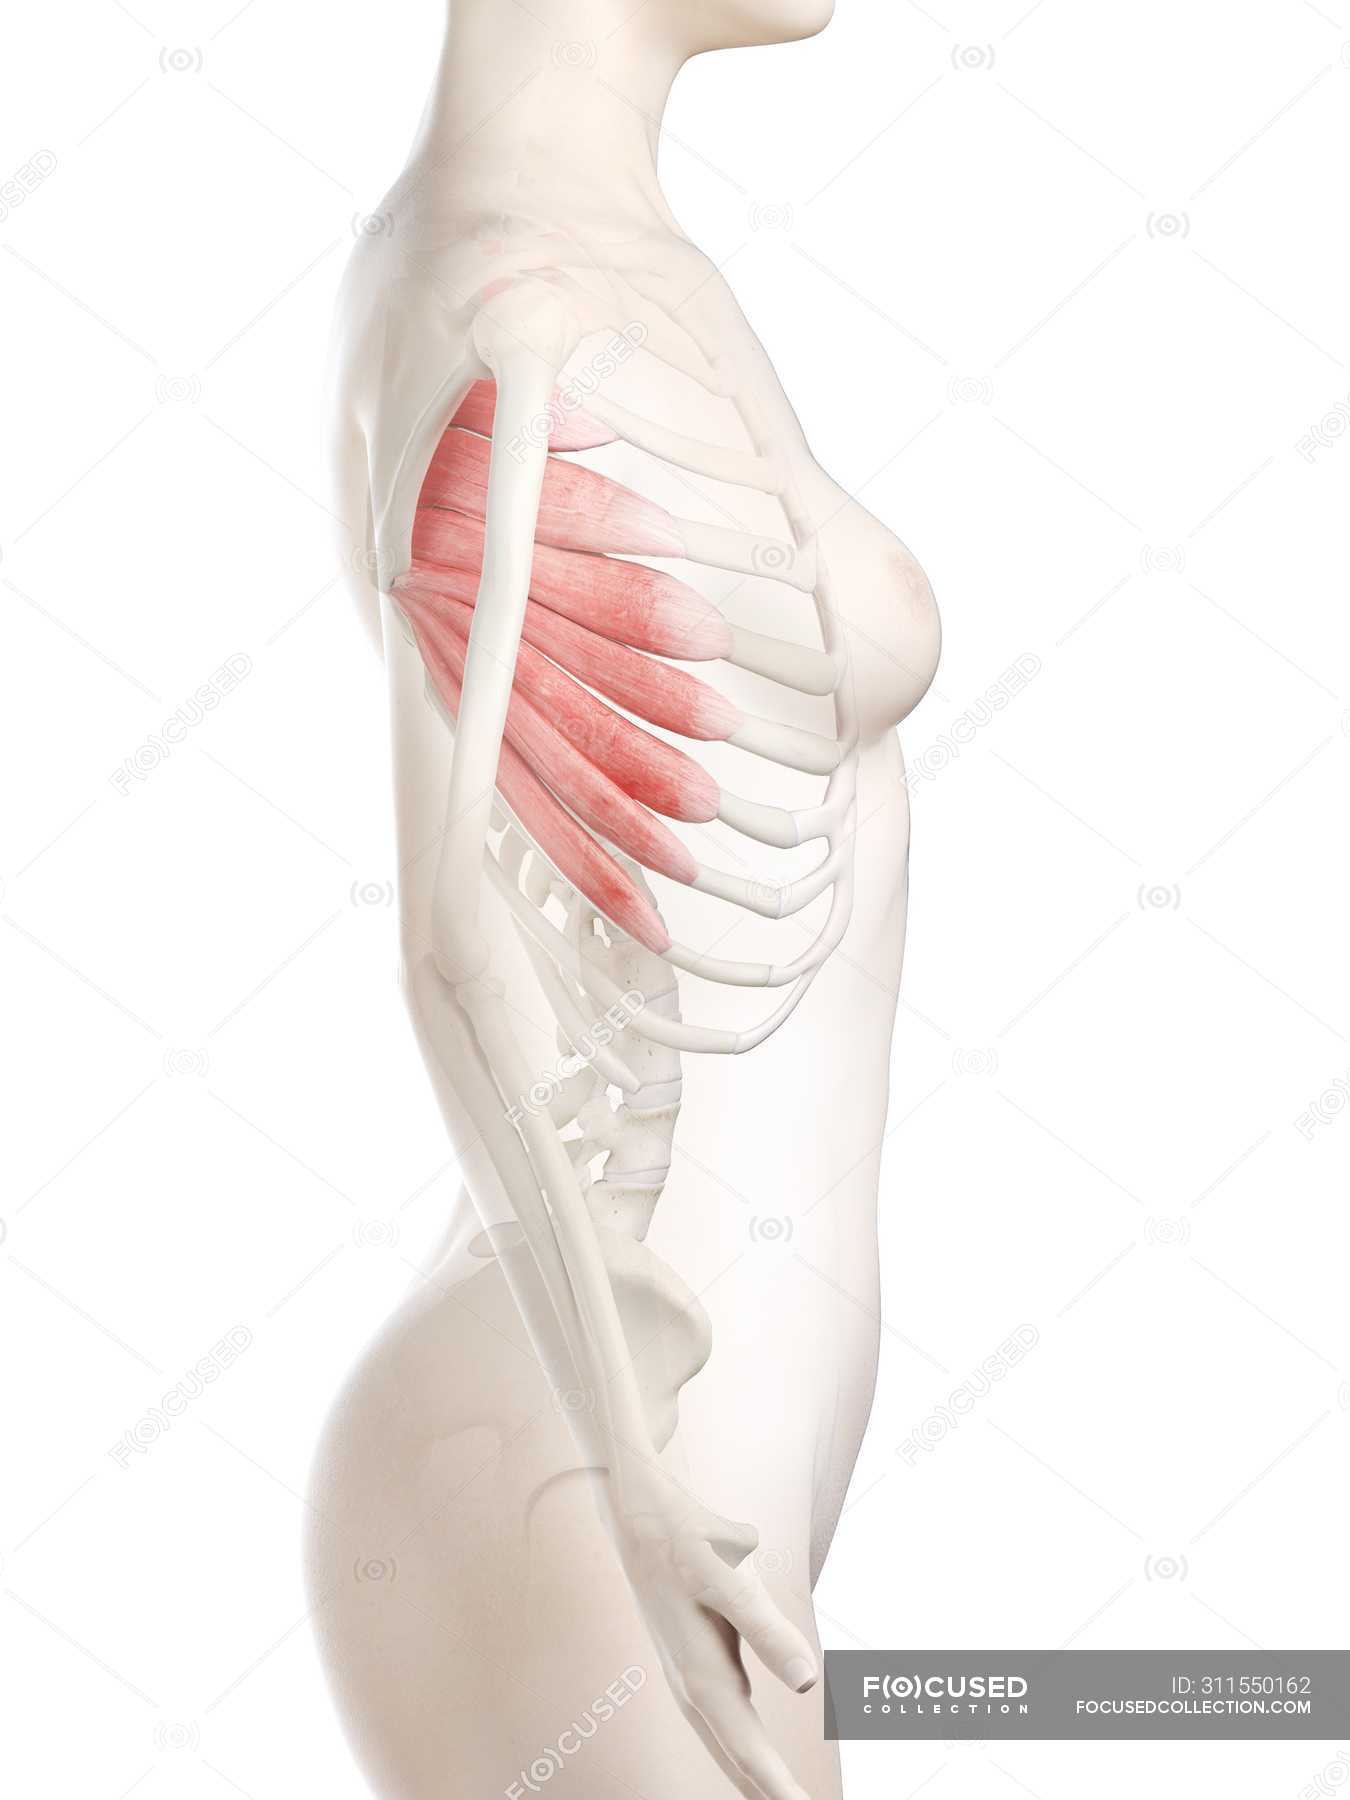 Muscle serratus anterior Serratus anterior